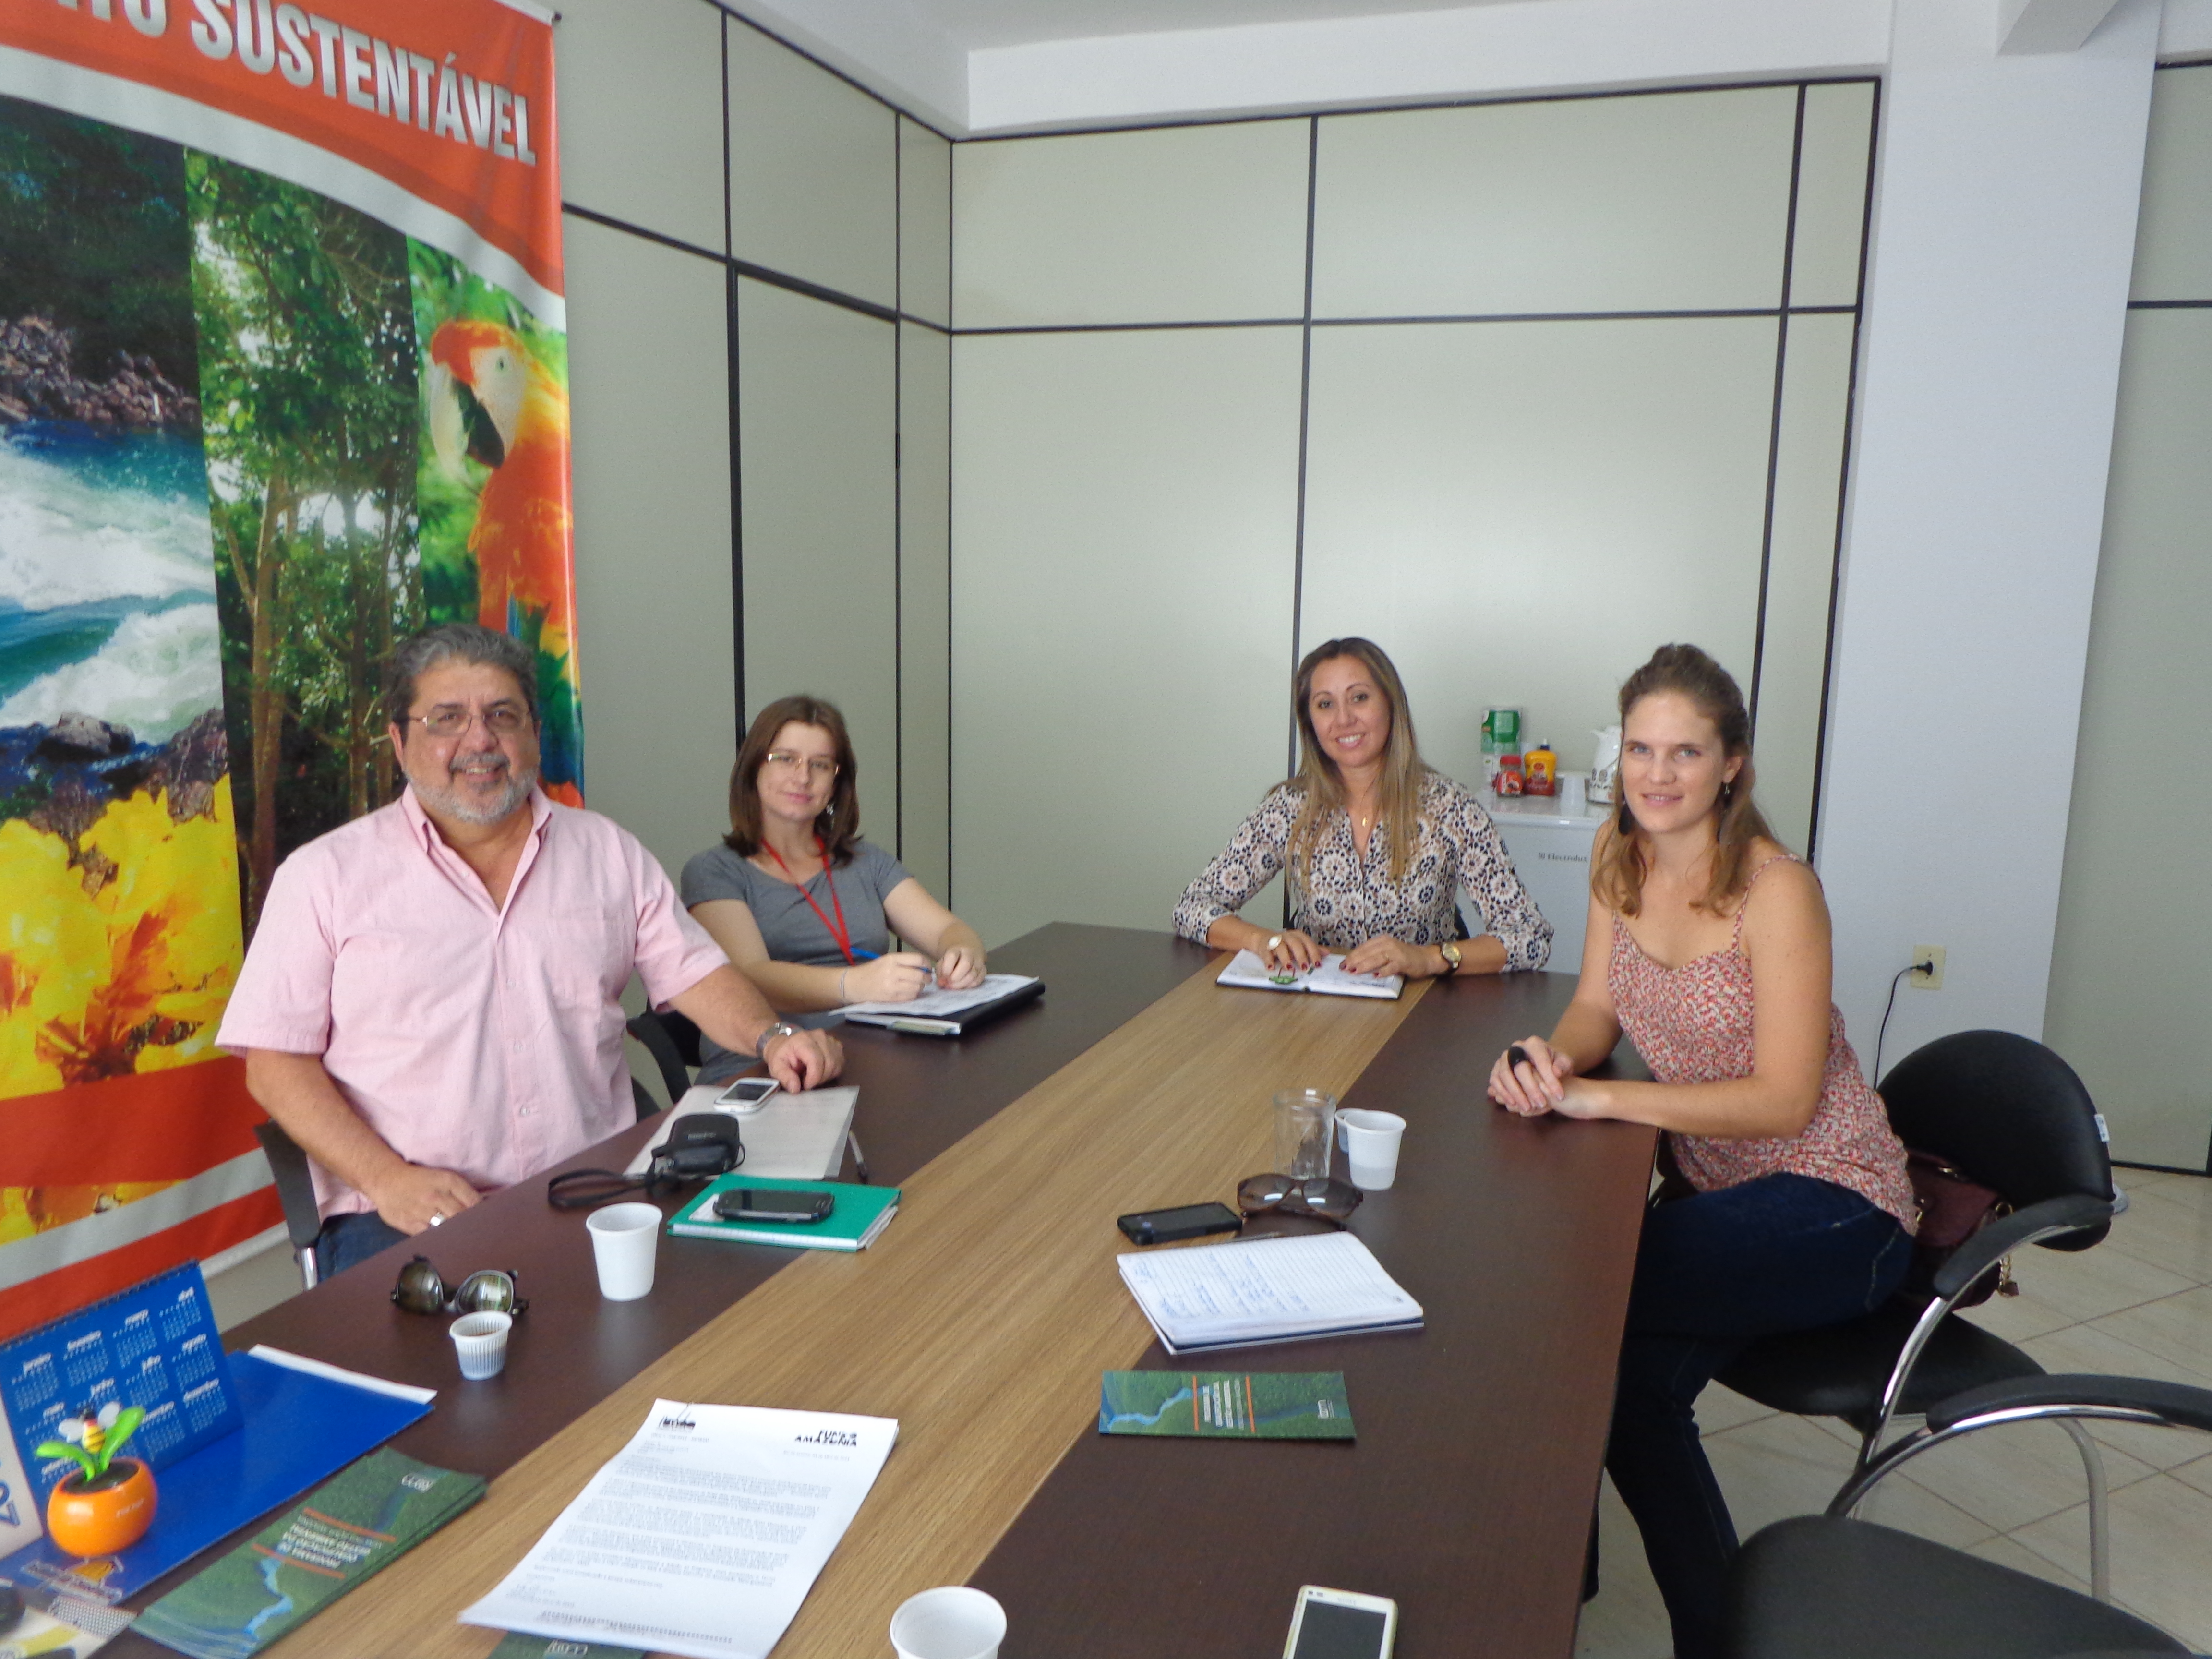 Nelson Issa e Paula Rache em reunião com a Secretária do Meio Ambiente em Sinop MT - Cristina Ferri (na cabeceira da mesa). 